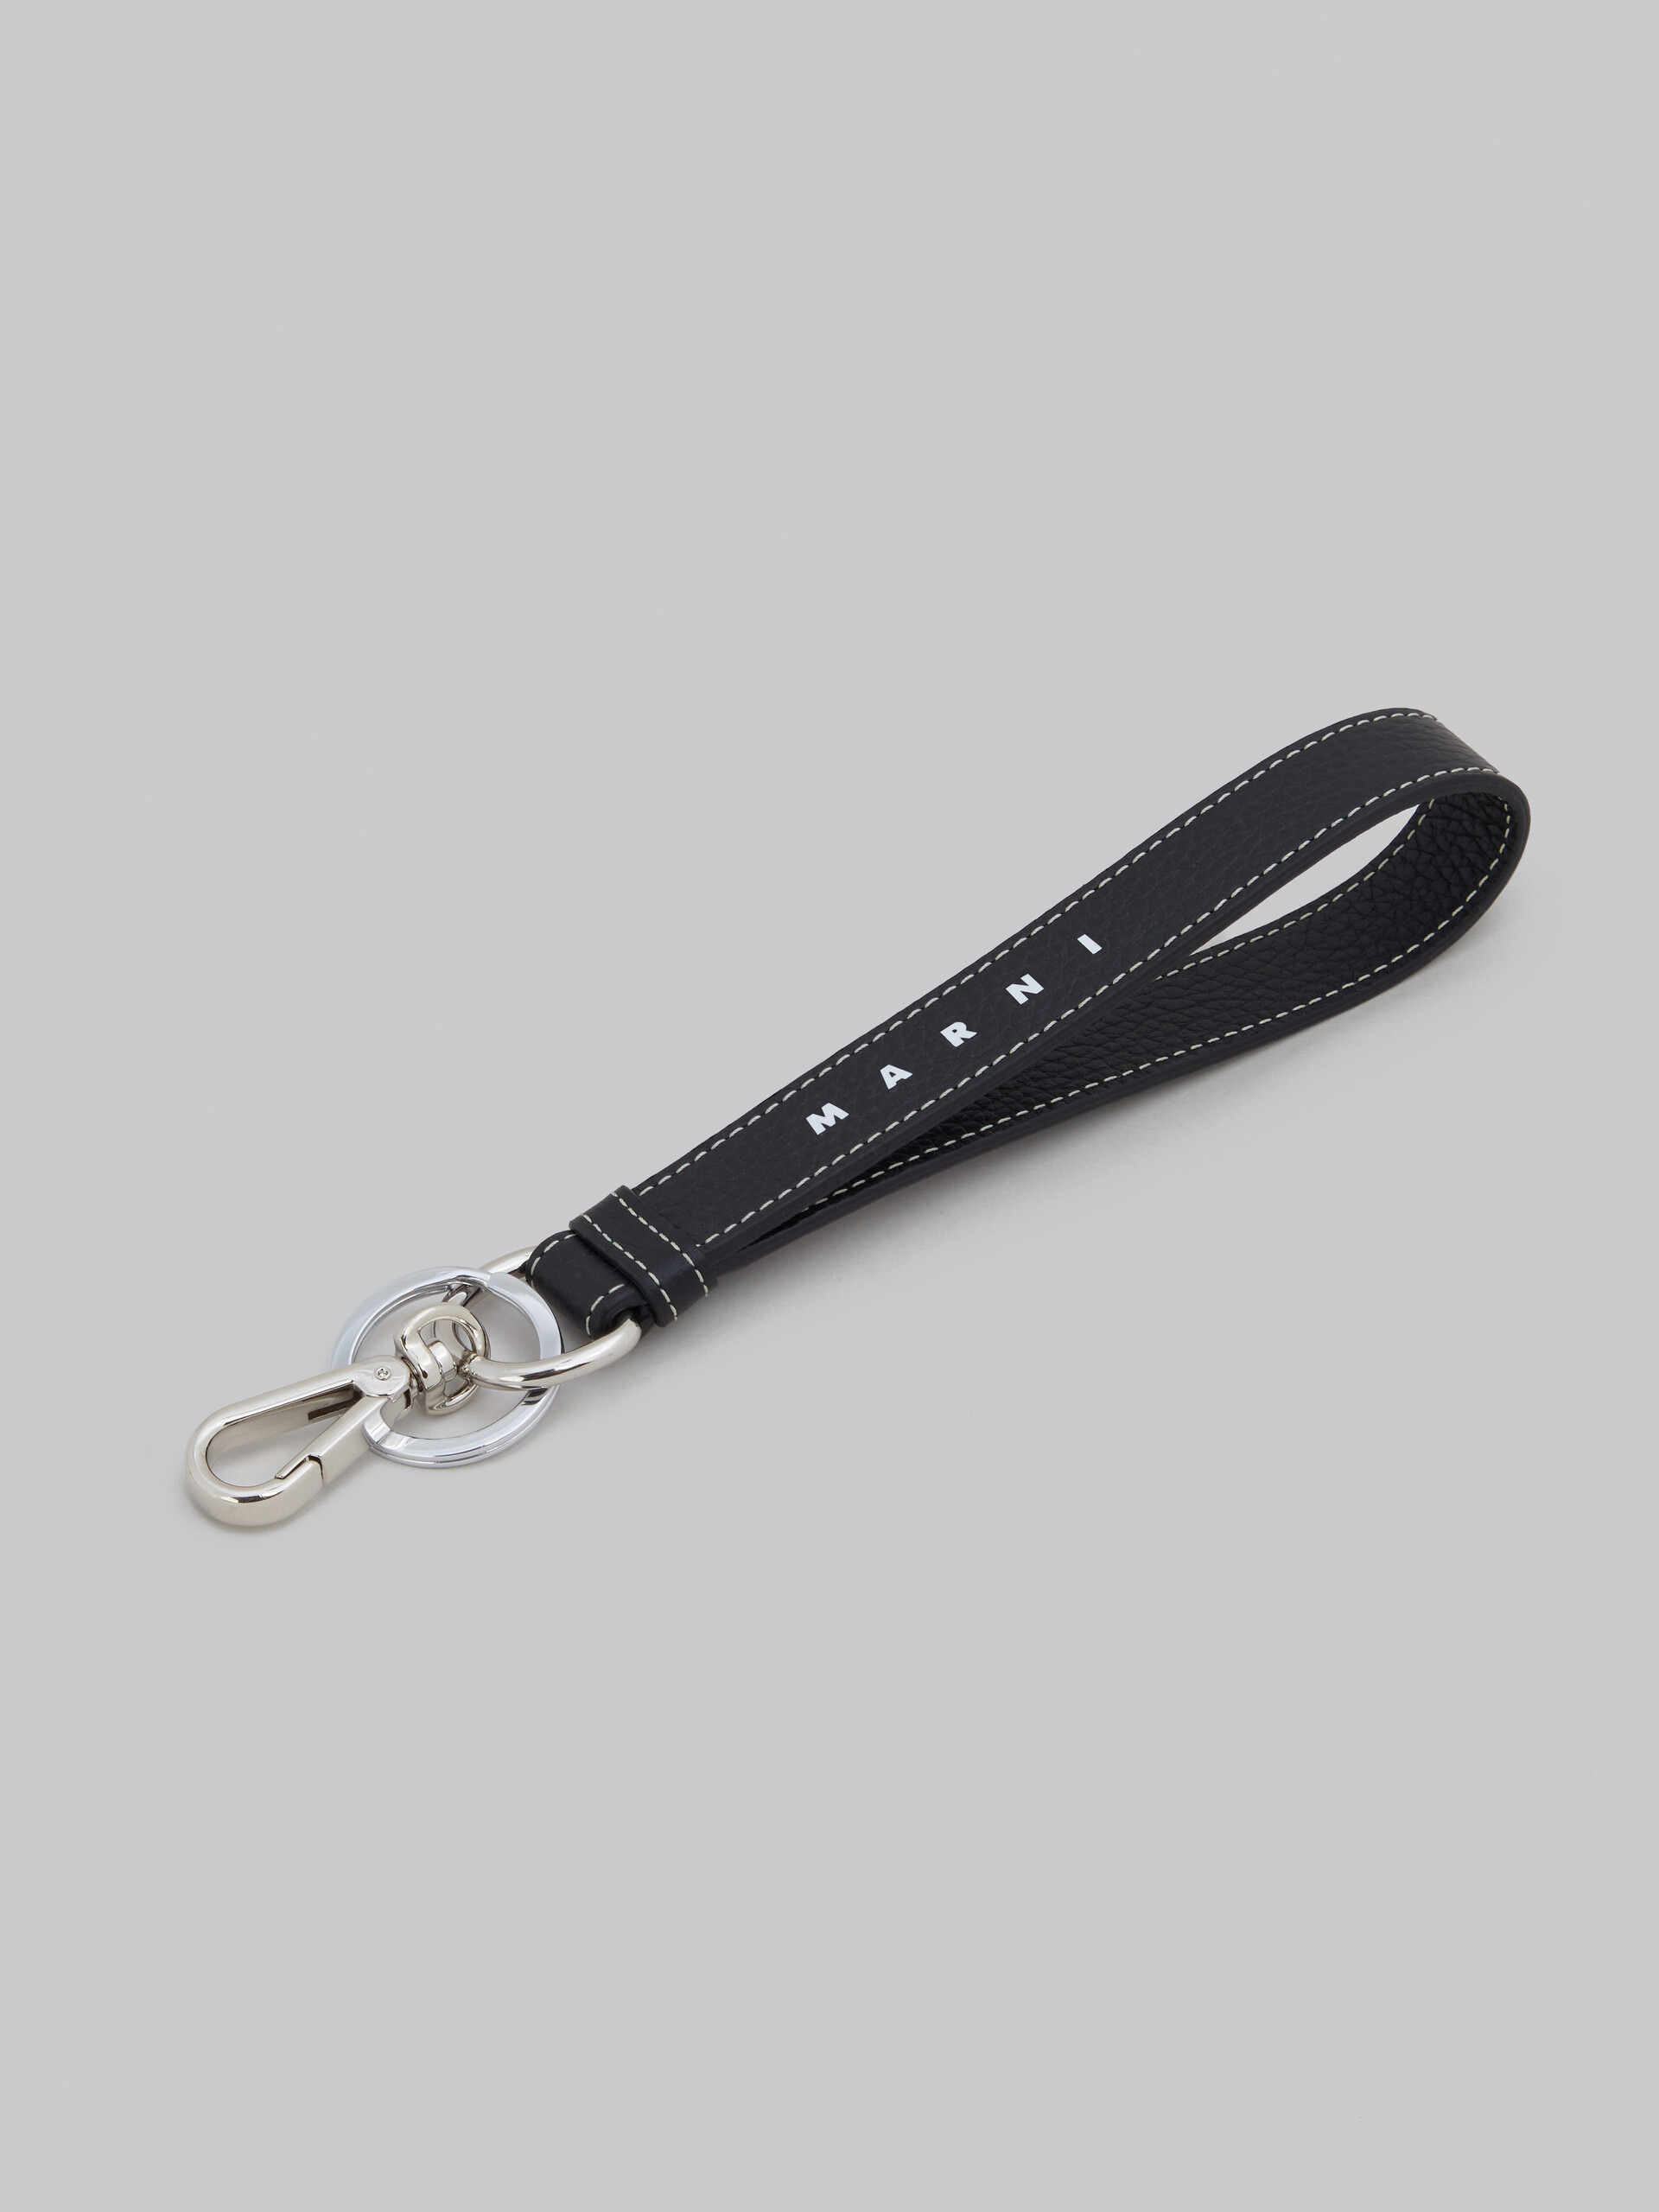 Schwarzer Schlüsselring aus Leder - Schlüsseletui - Image 2